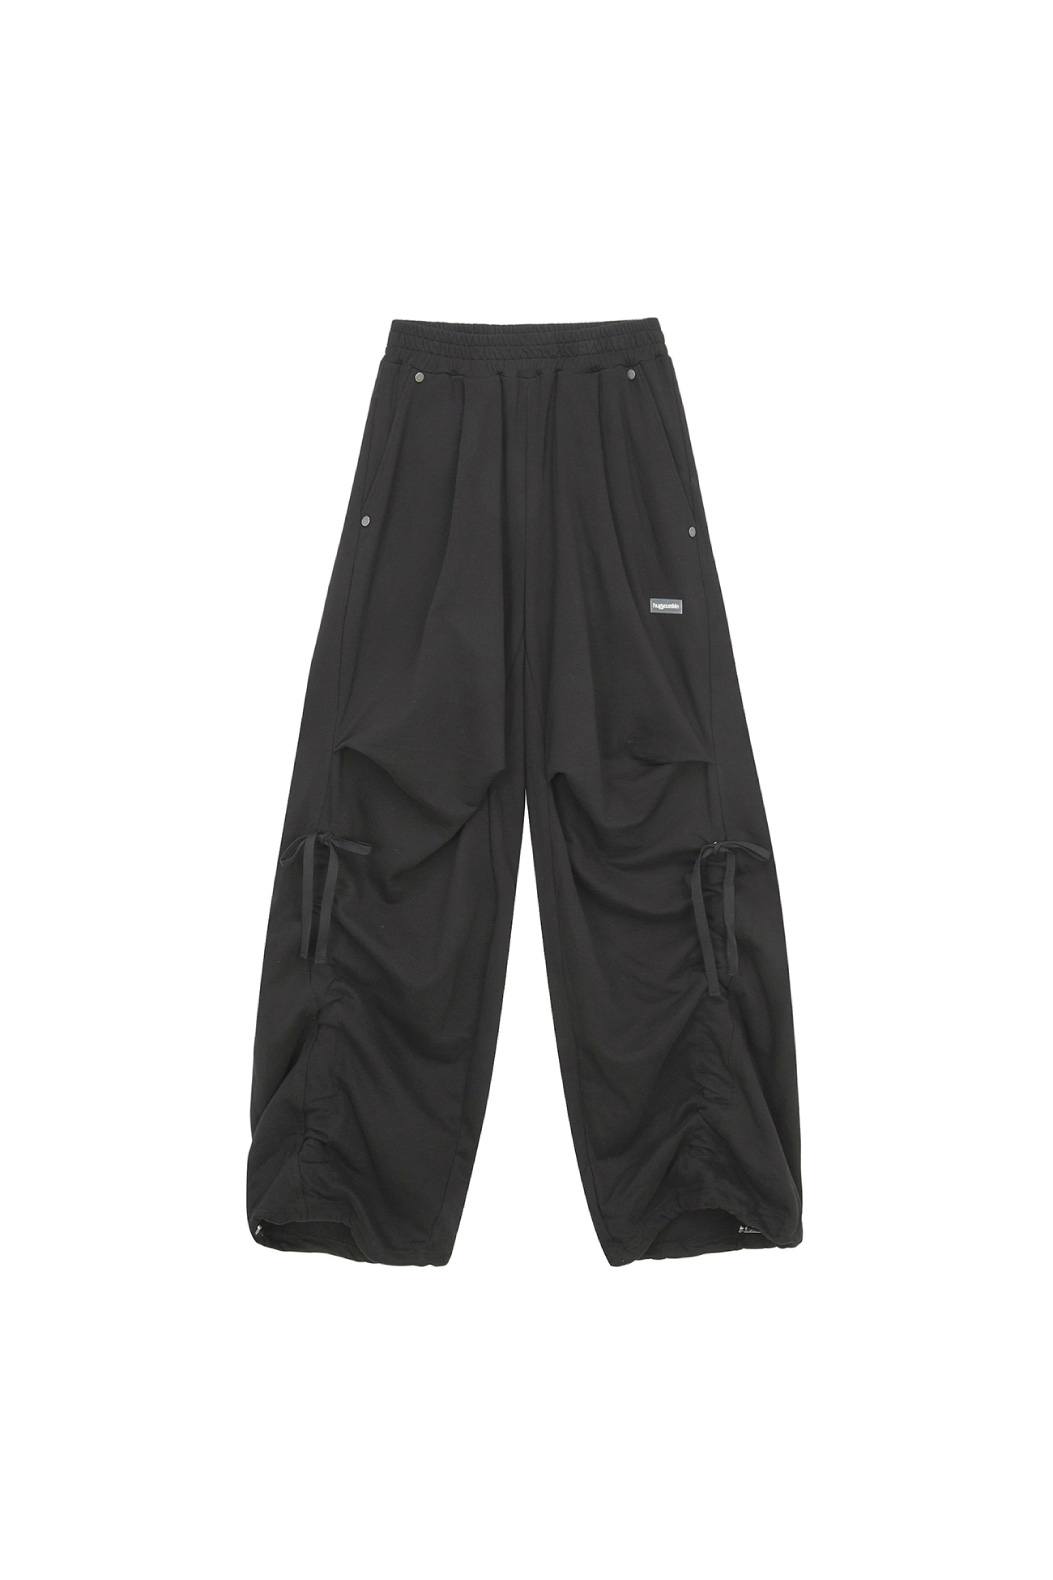 wide jogger pants HS ver (black)